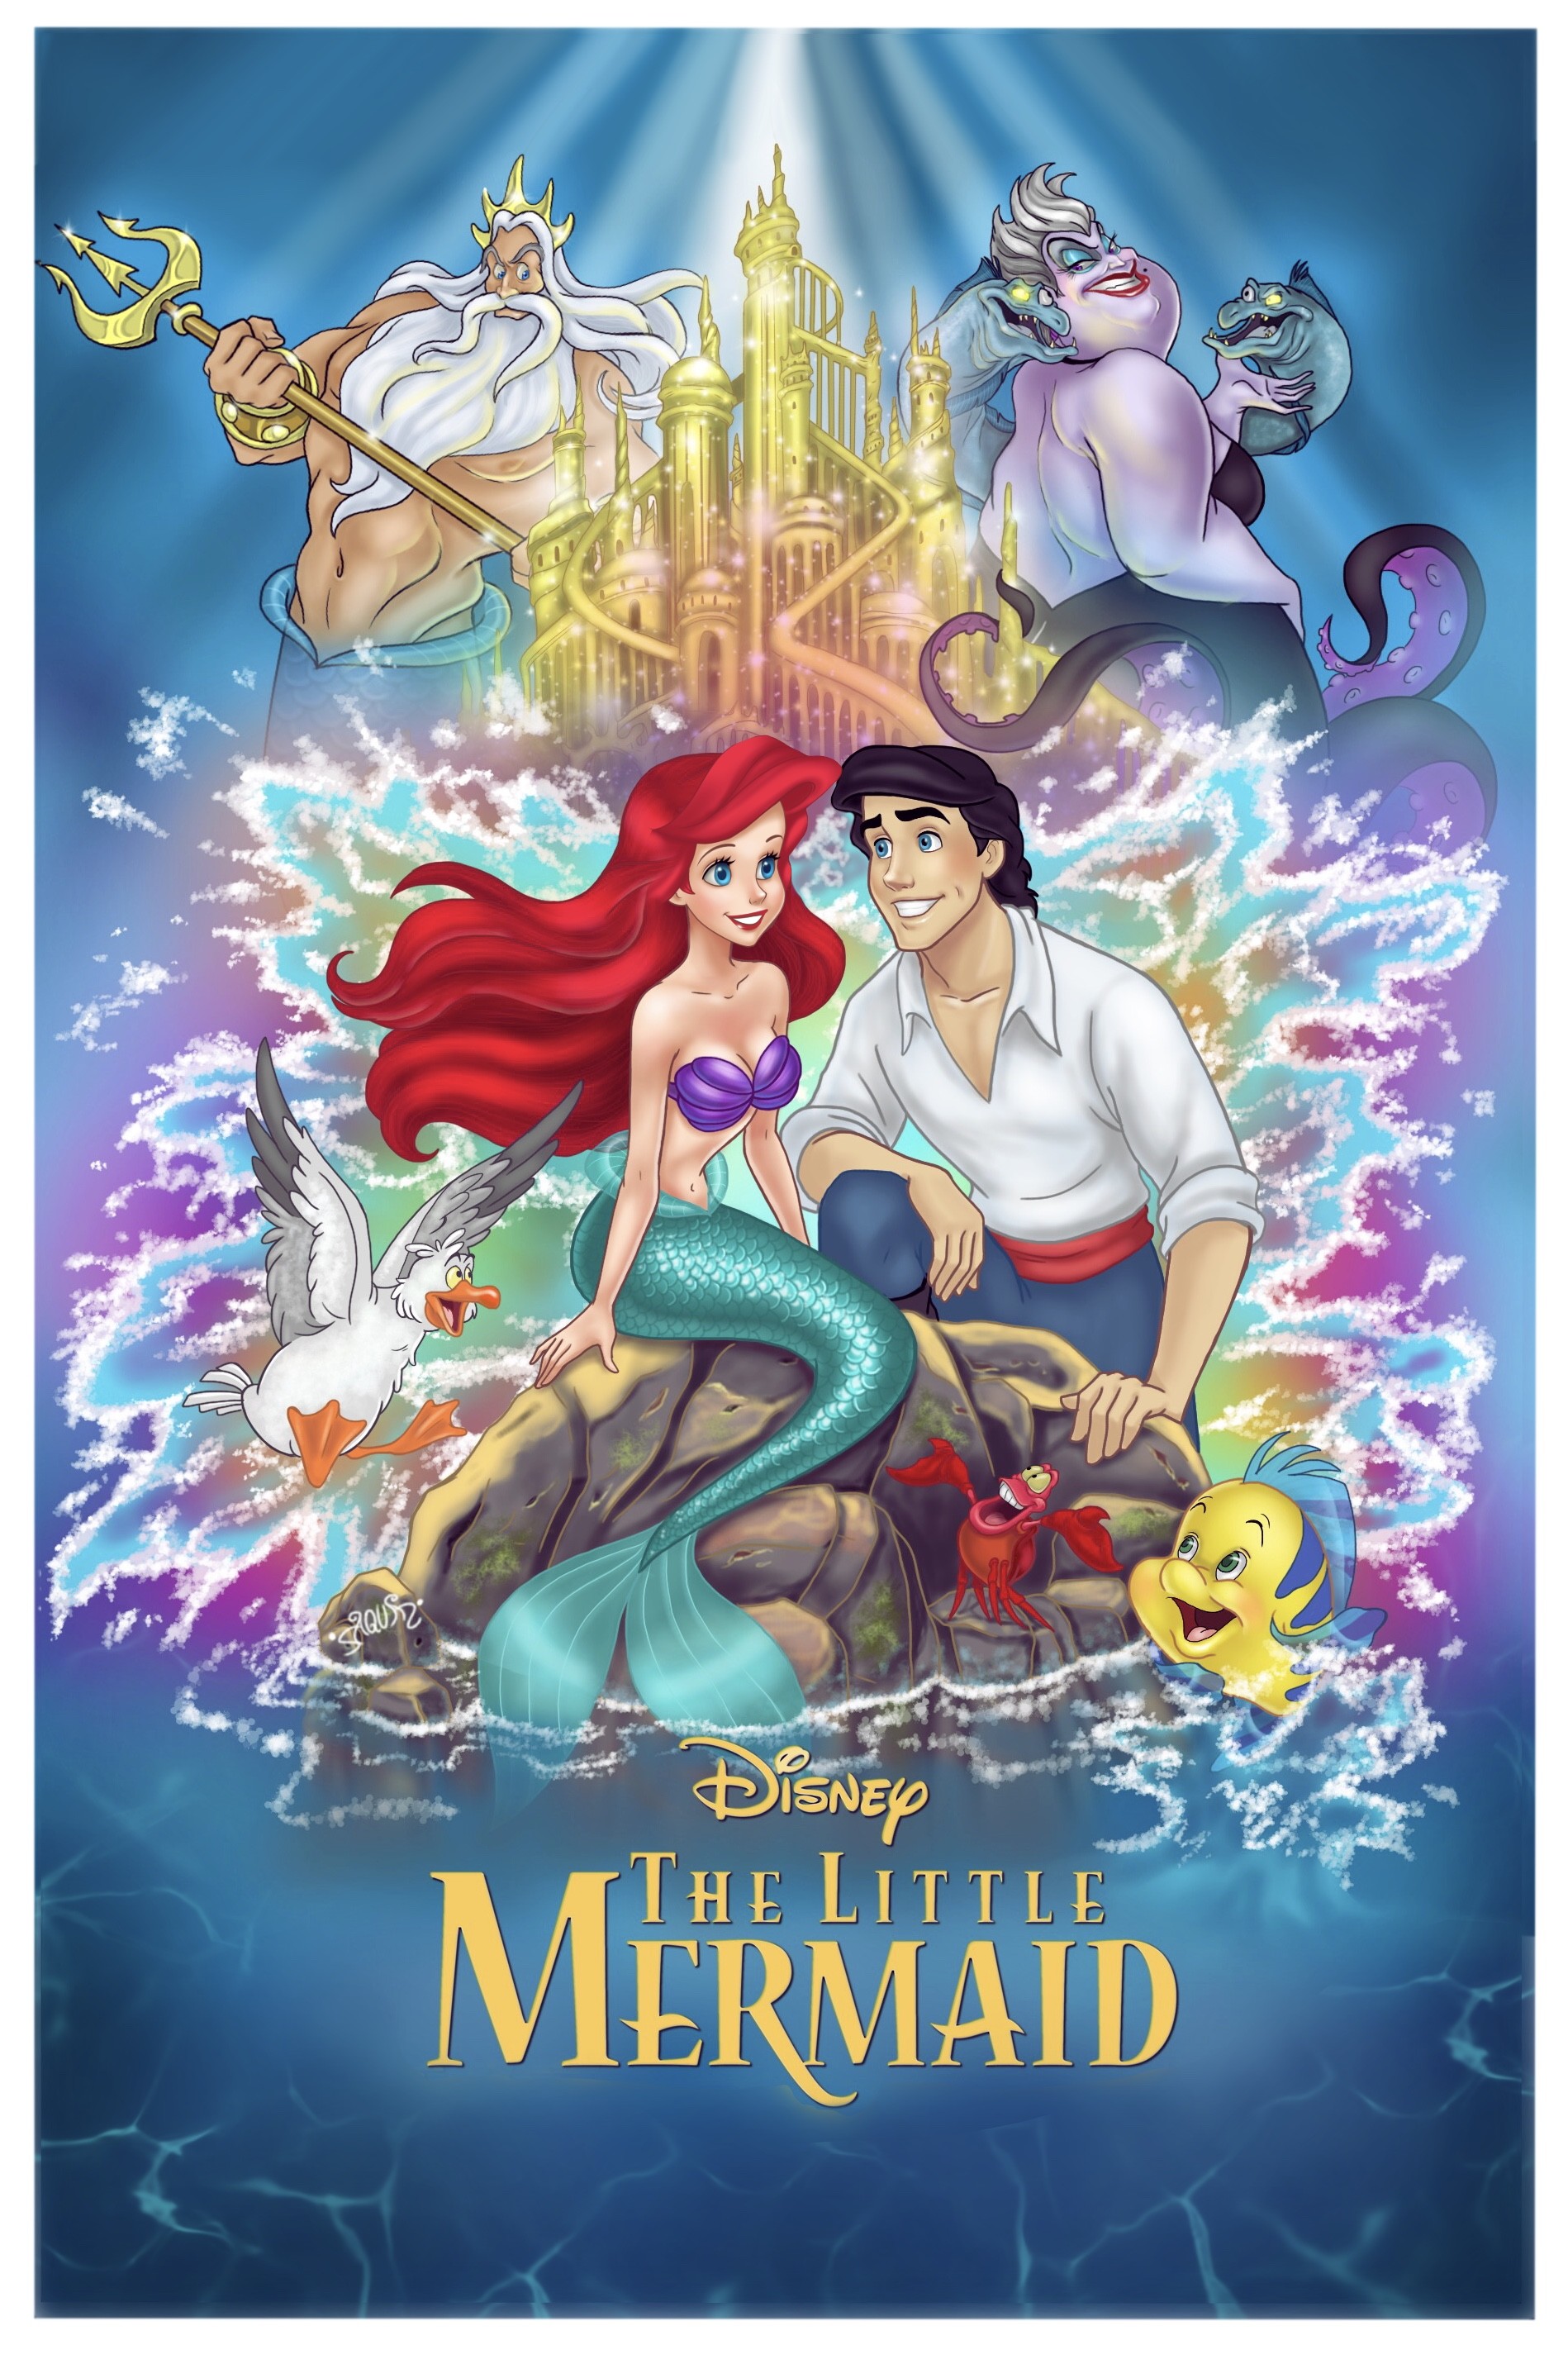 The Little Mermaid Cover Art